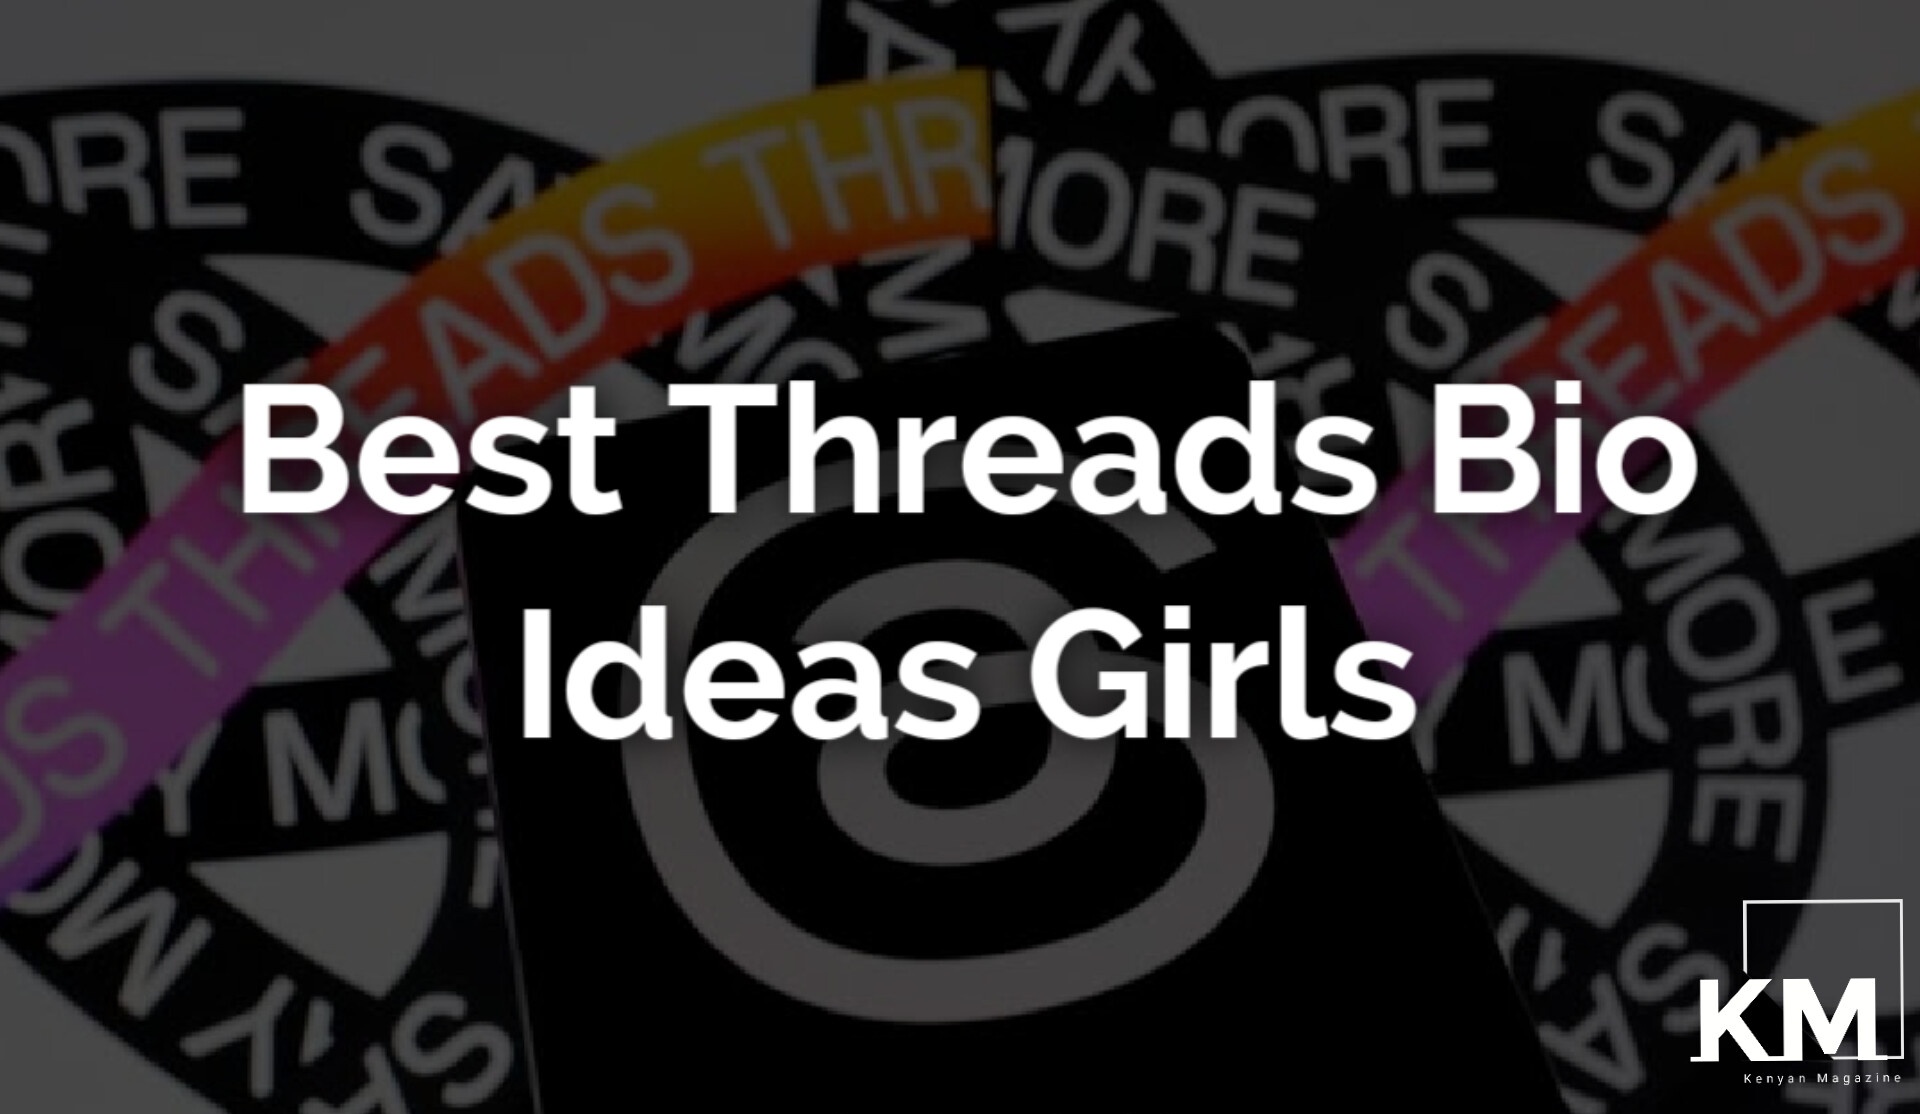 Threads bio ideas girls